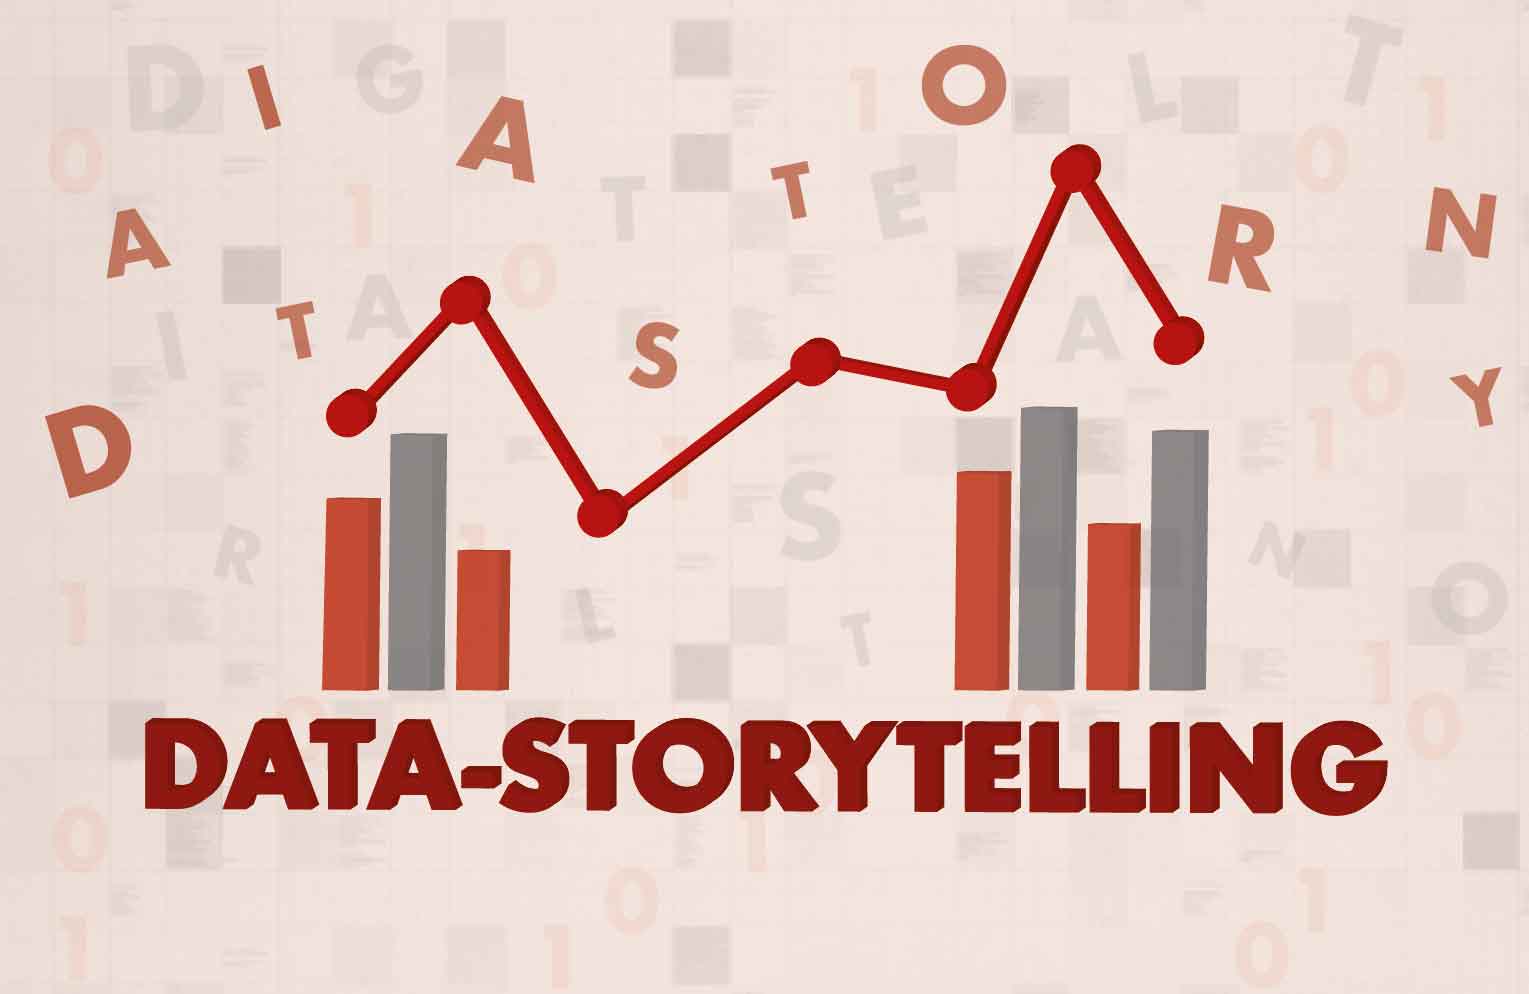 Data storytelling